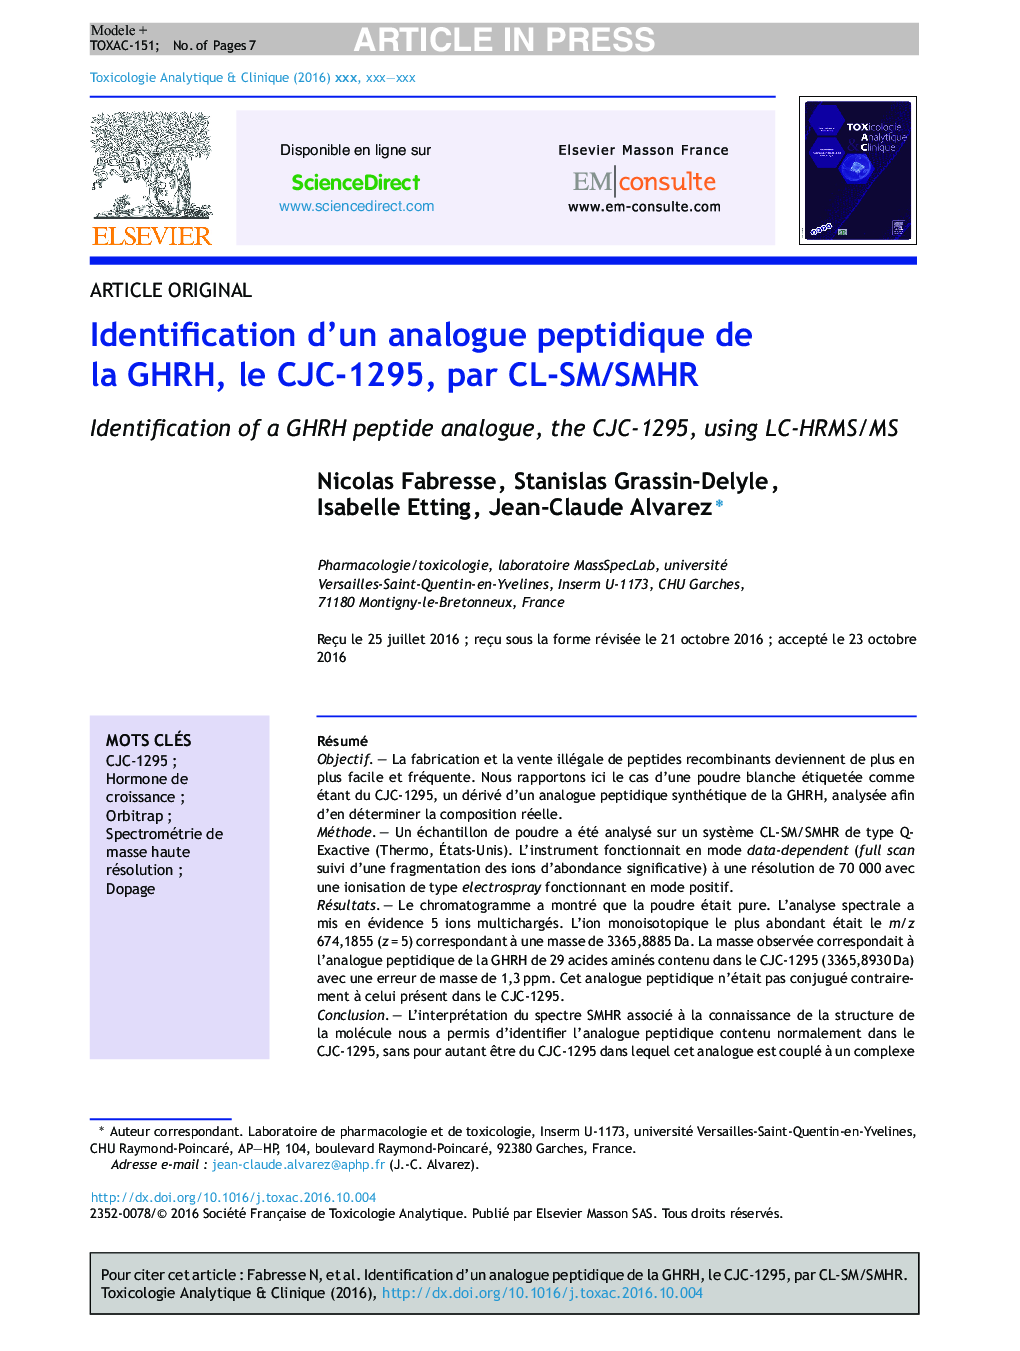 Identification d'un analogue peptidique de la GHRH, le CJC-1295, par CL-SM/SMHR